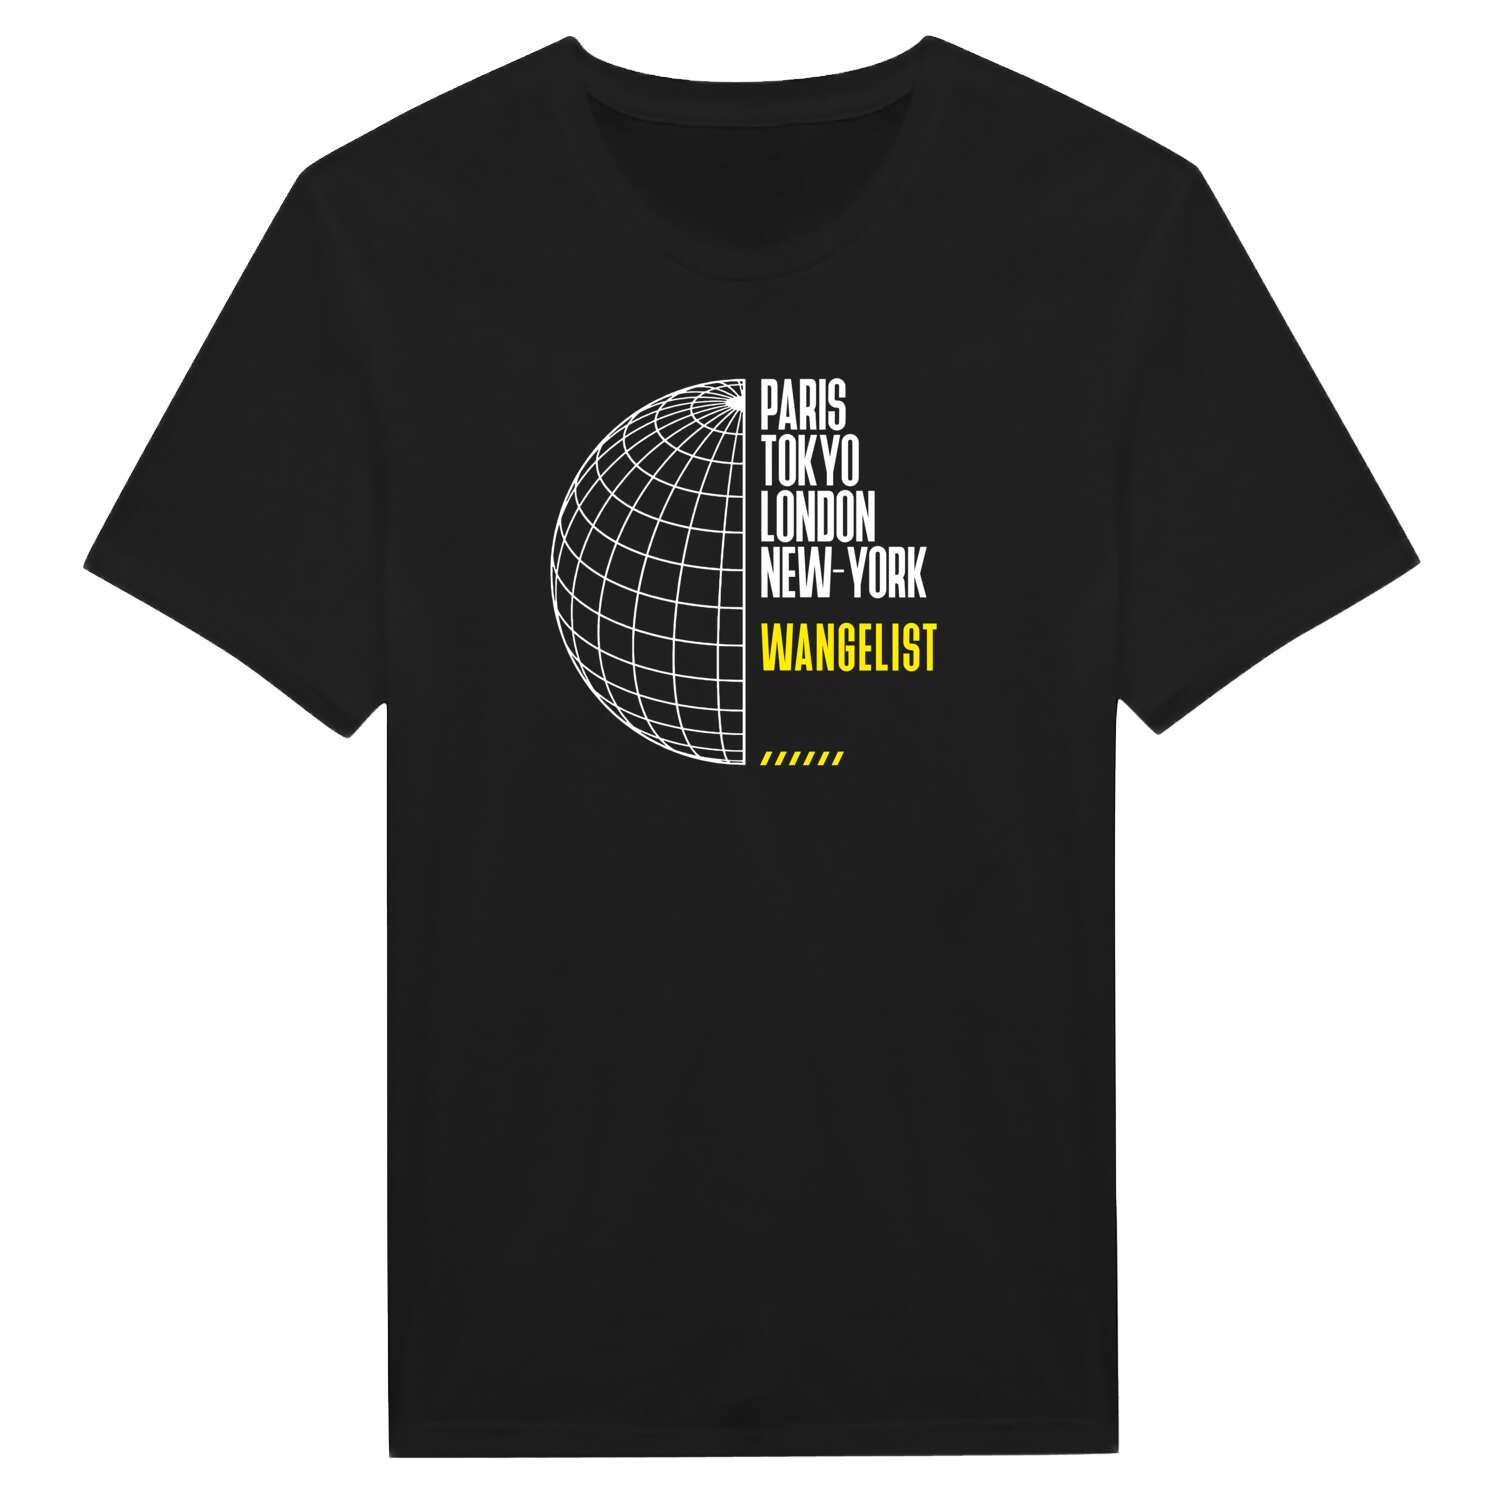 Wangelist T-Shirt »Paris Tokyo London«